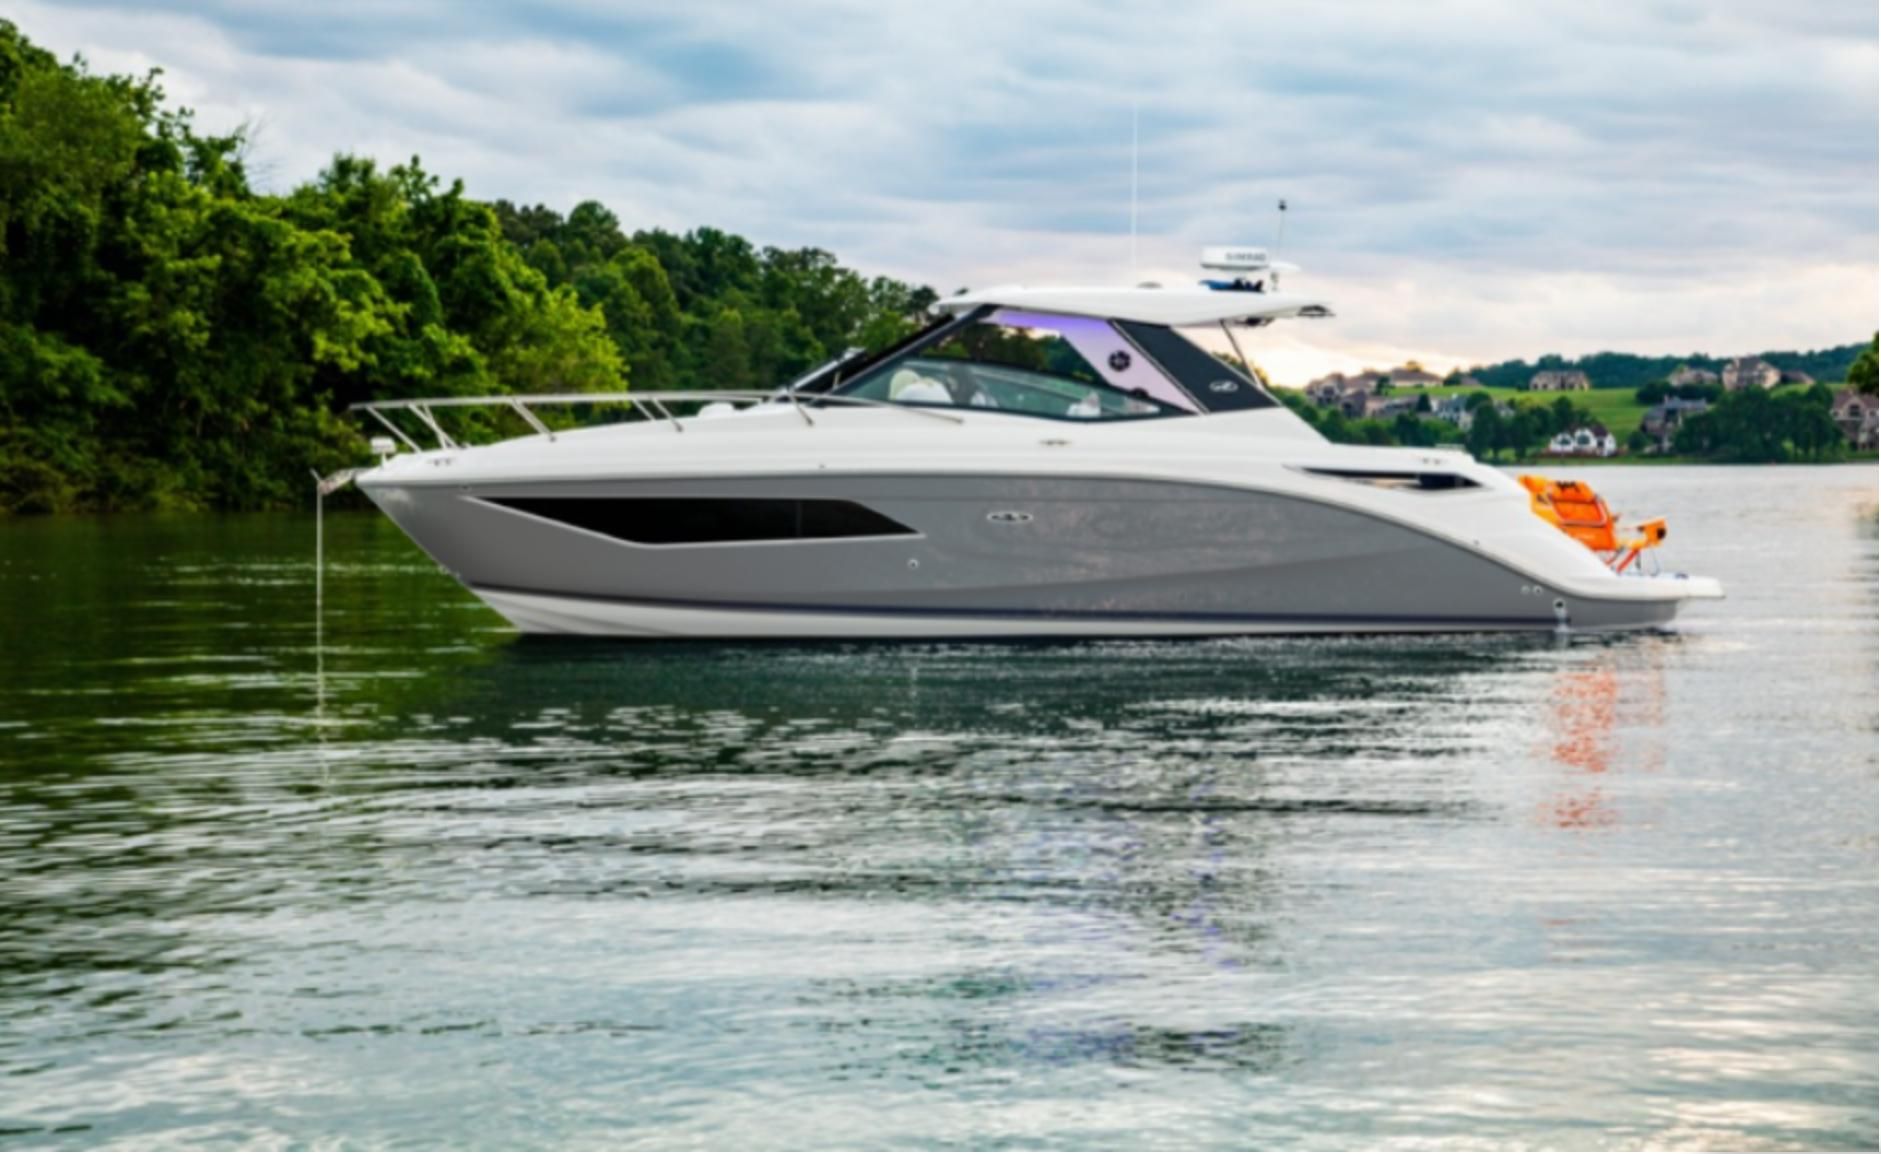 2022 Sea Ray Sundancer 320 Sports Cruiser for sale YachtWorld